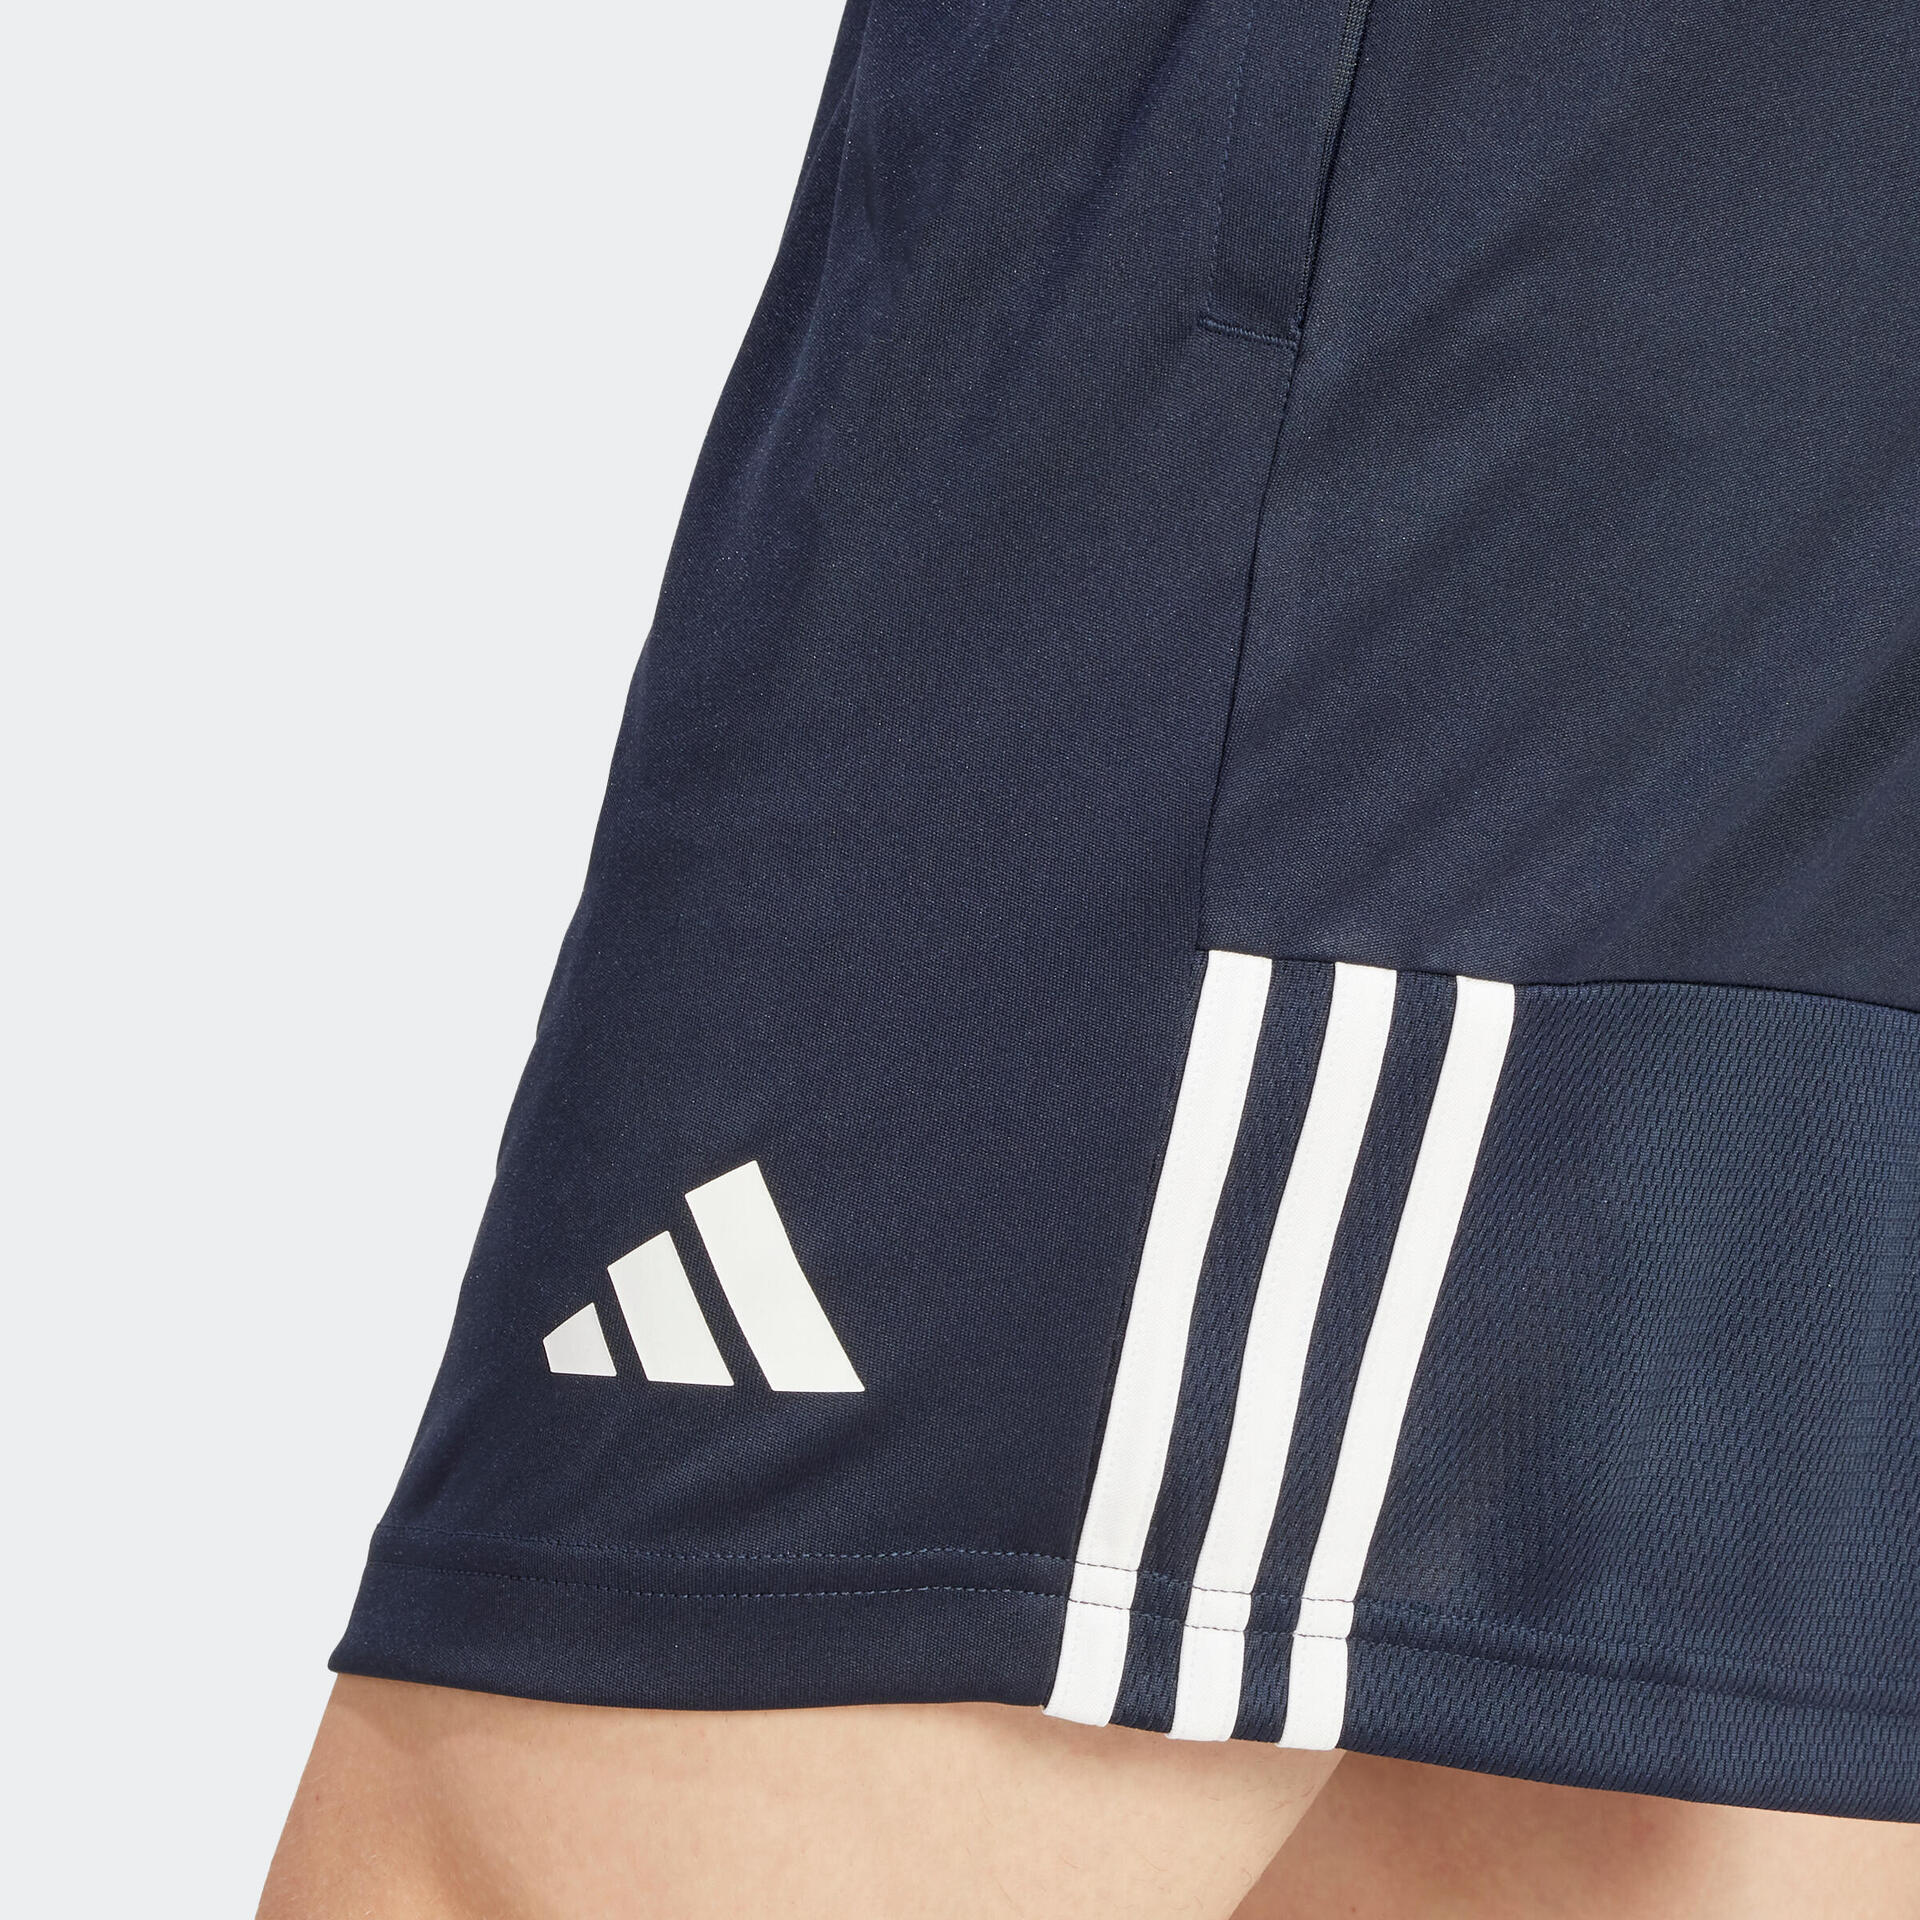 Adidas voetbalshirt voor spelers en clubs